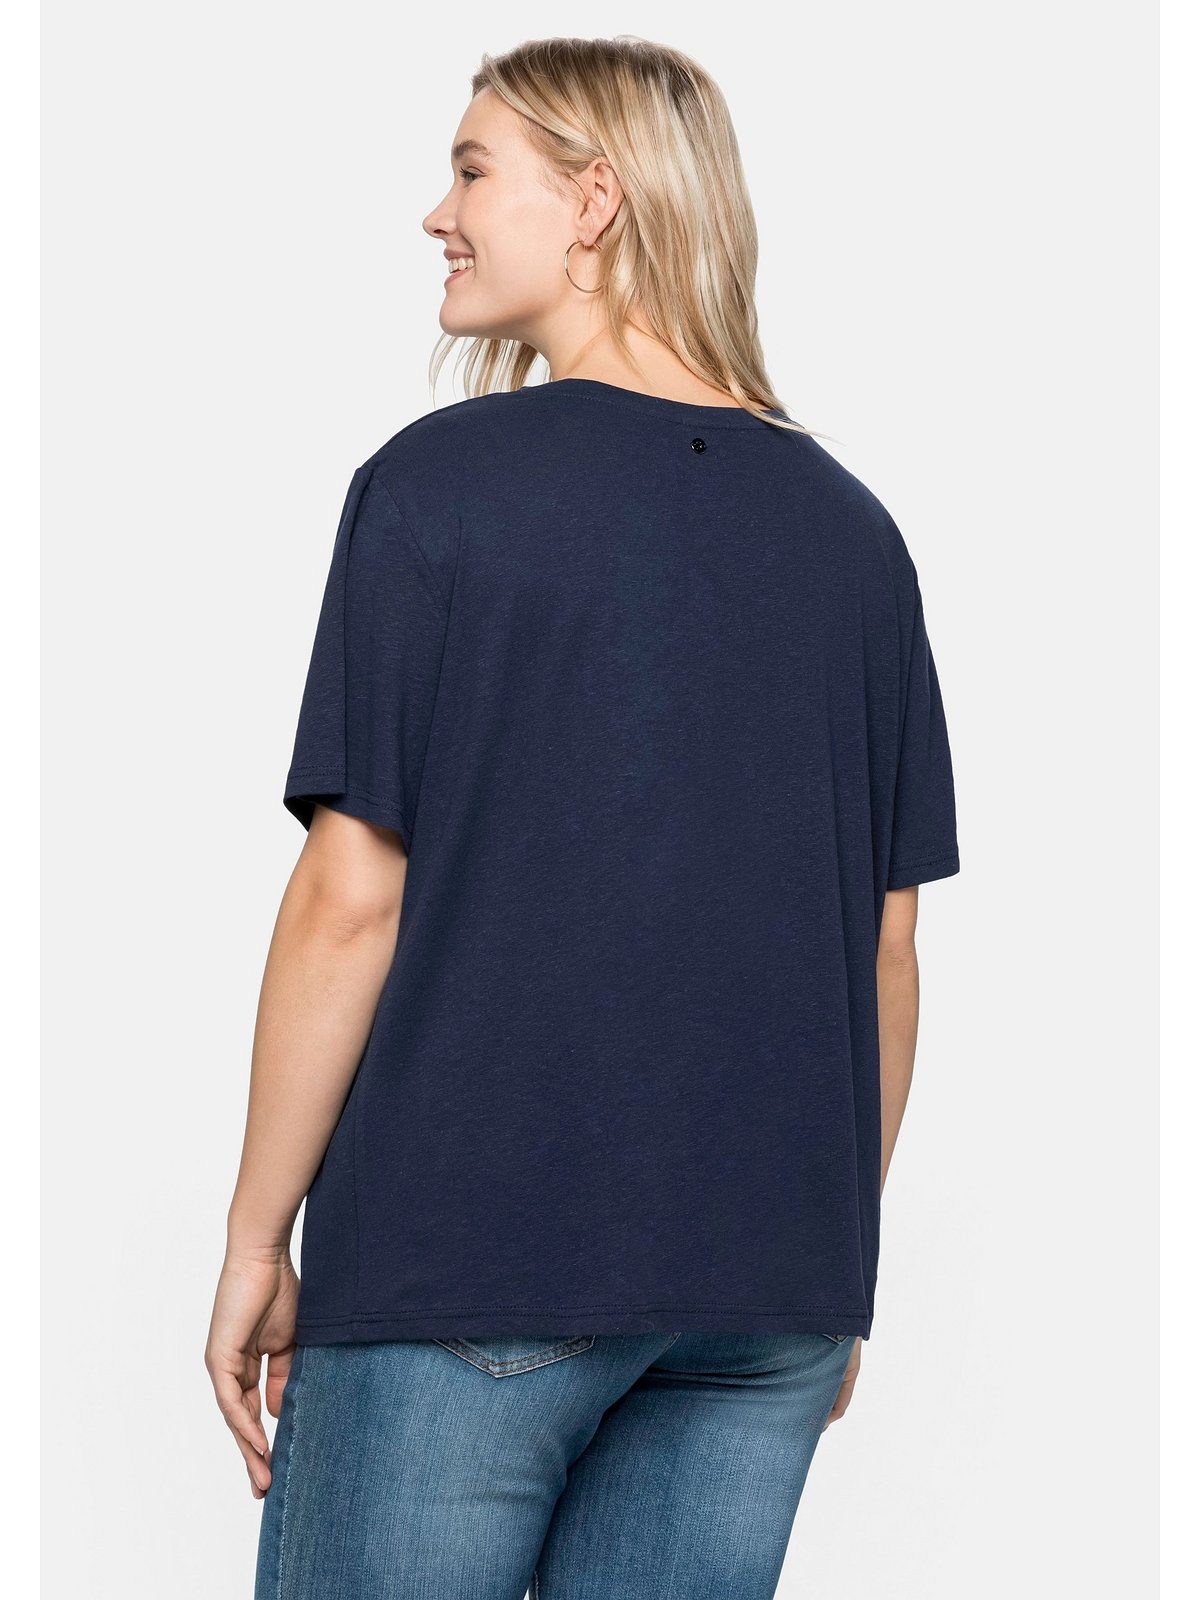 Beliebt ausverkauft Sheego T-Shirt Große Leinen-Viskose-Mix Größen aus edlem